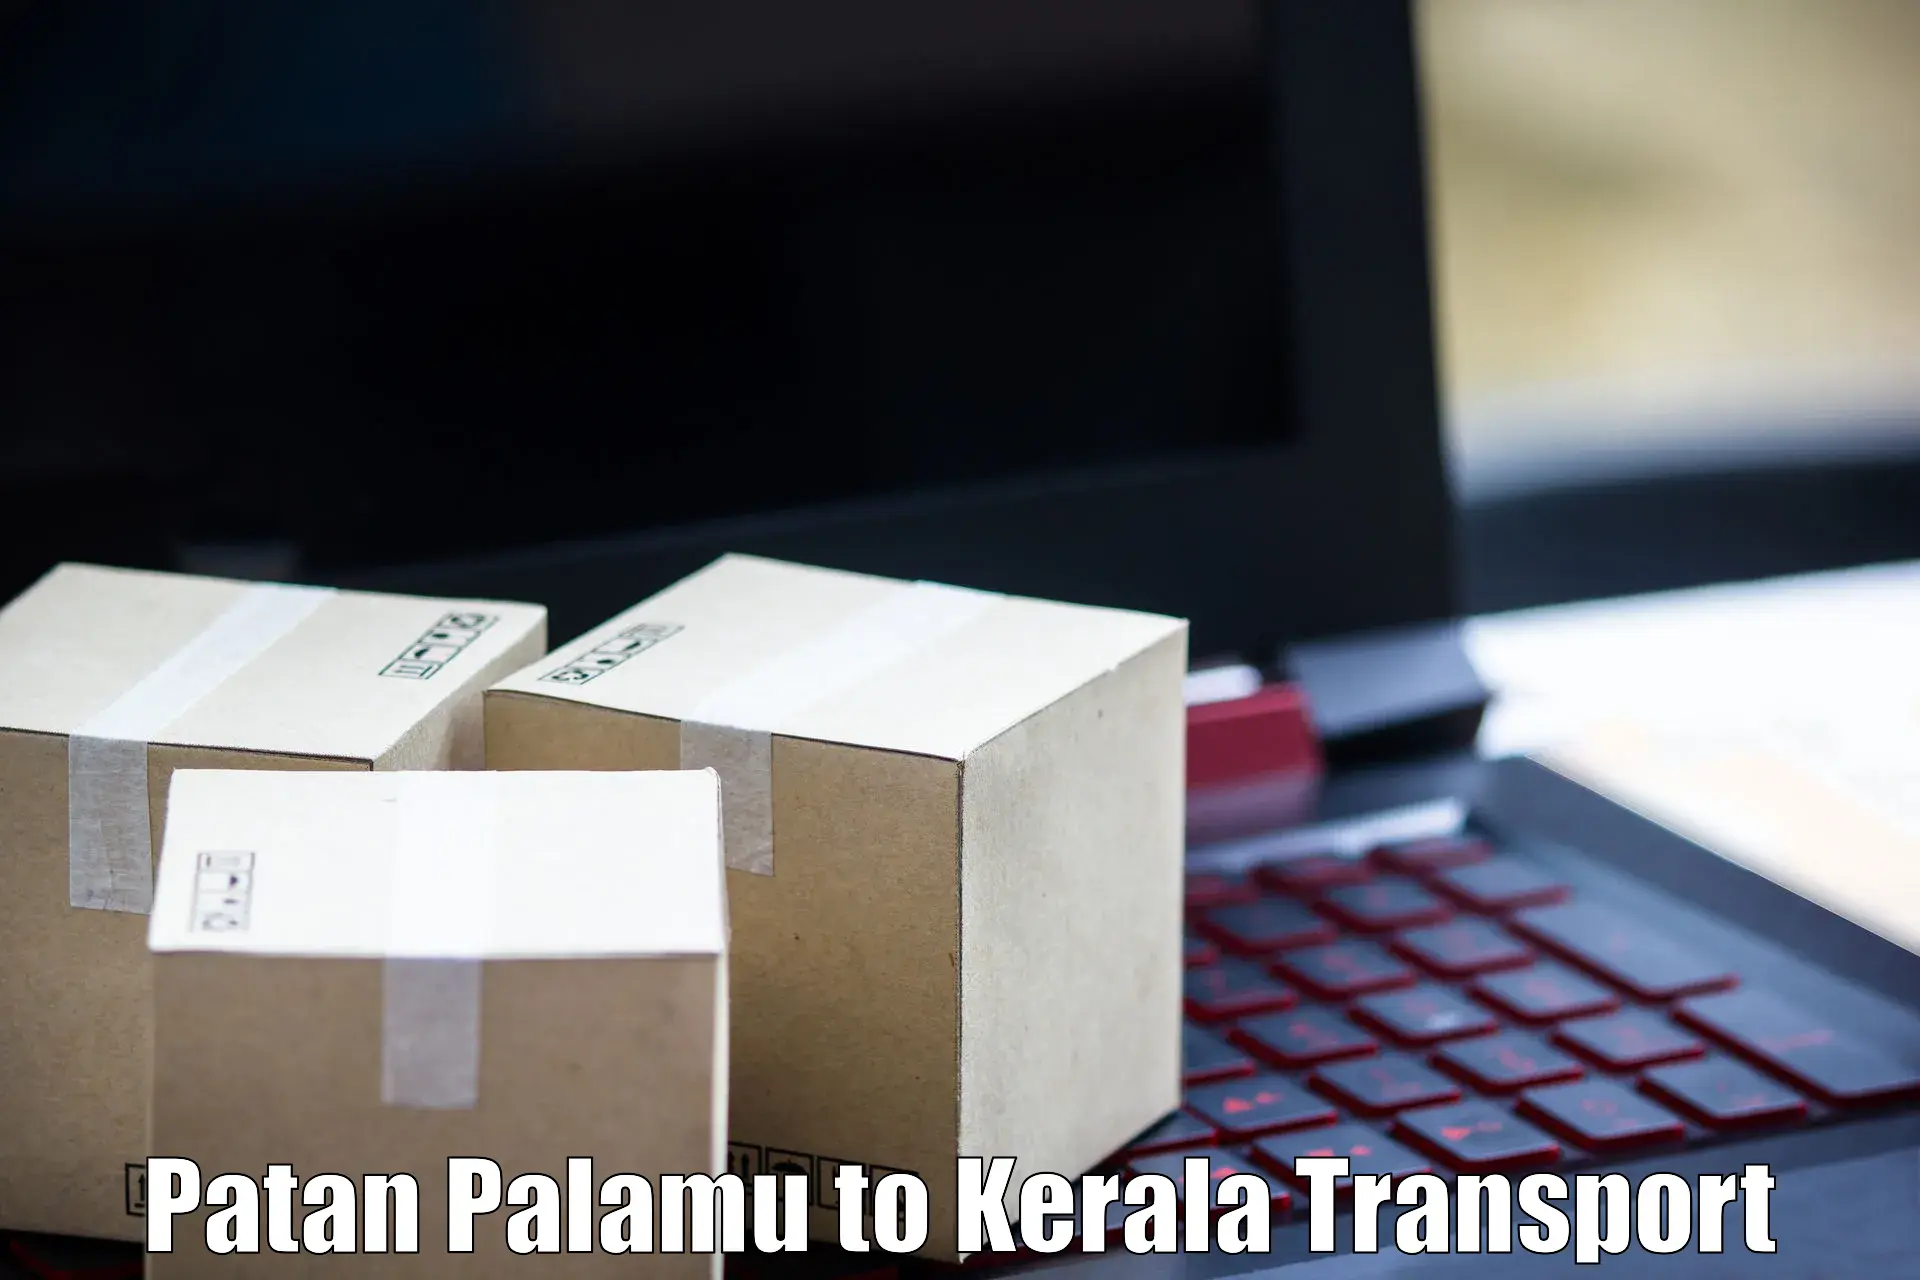 Online transport service Patan Palamu to Kuttikol